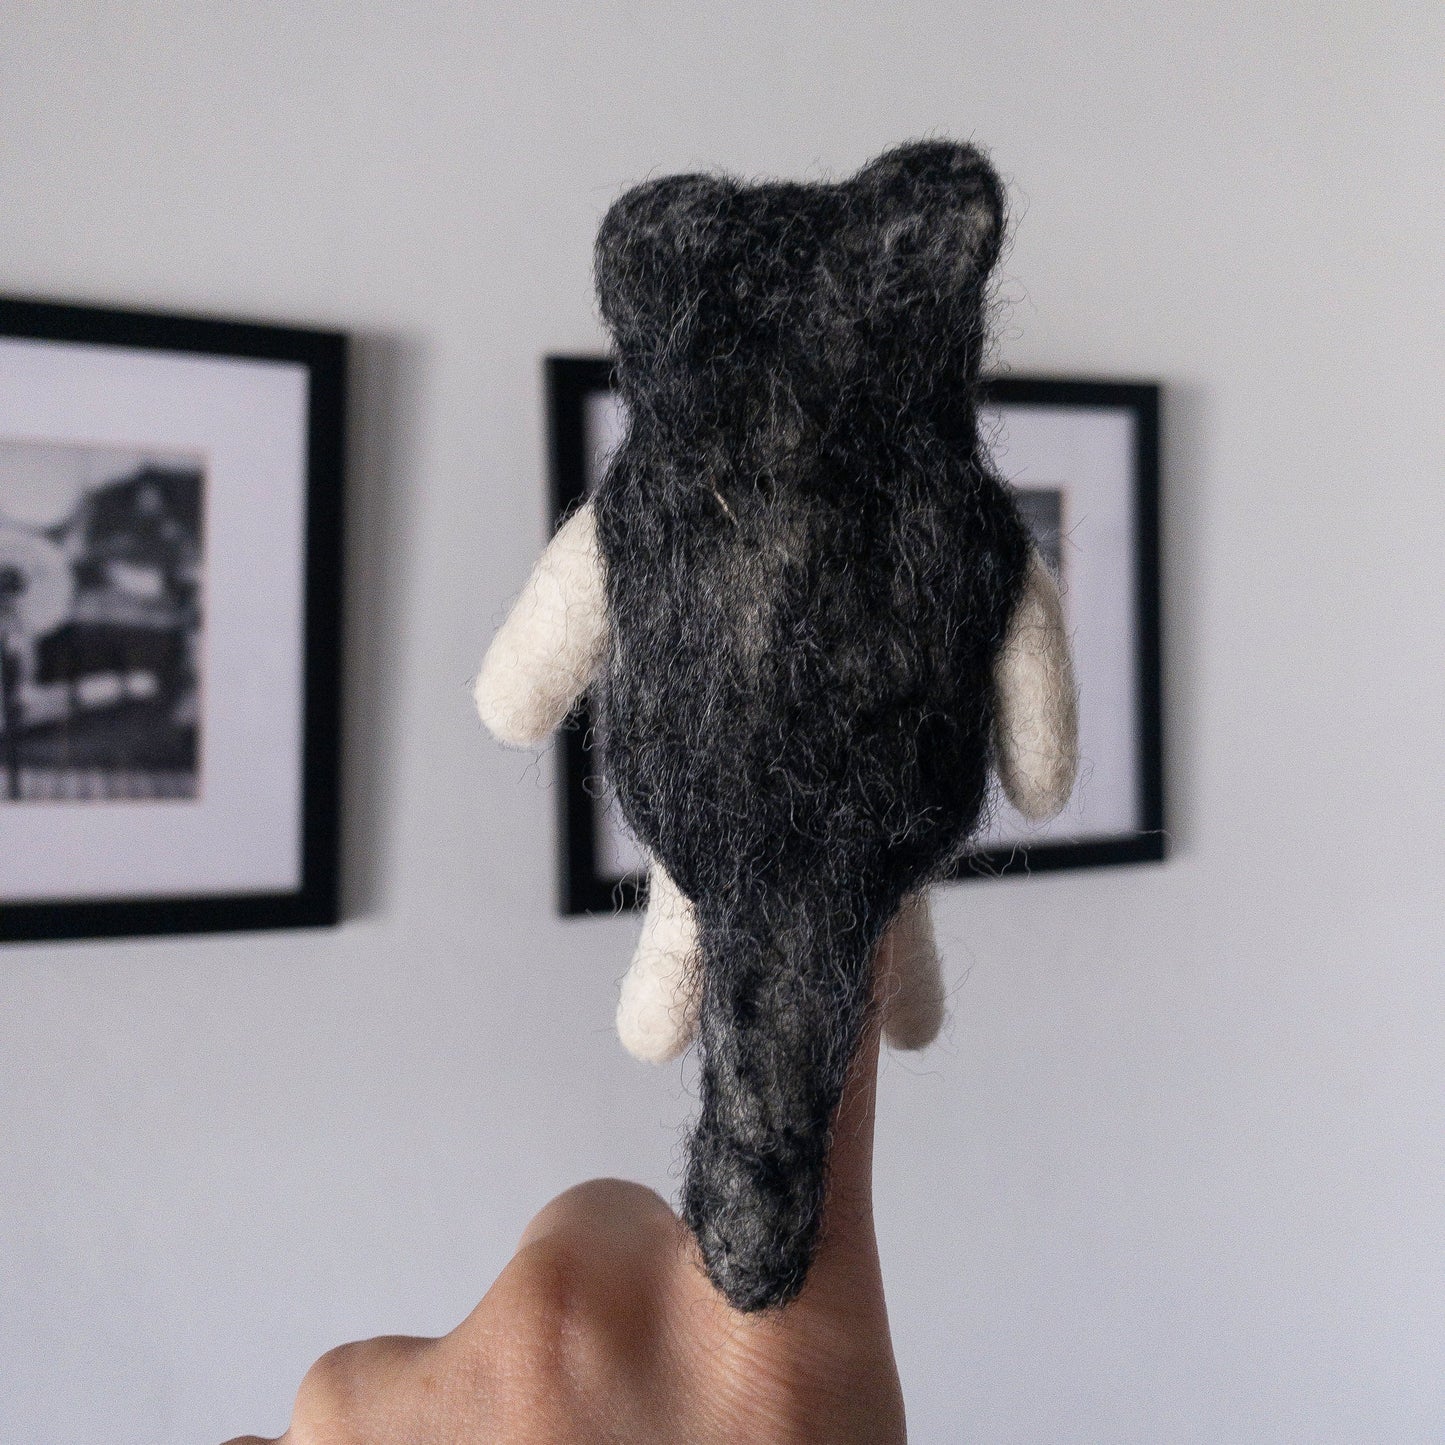 Felt Finger Puppet - Alaskan Husky Dog